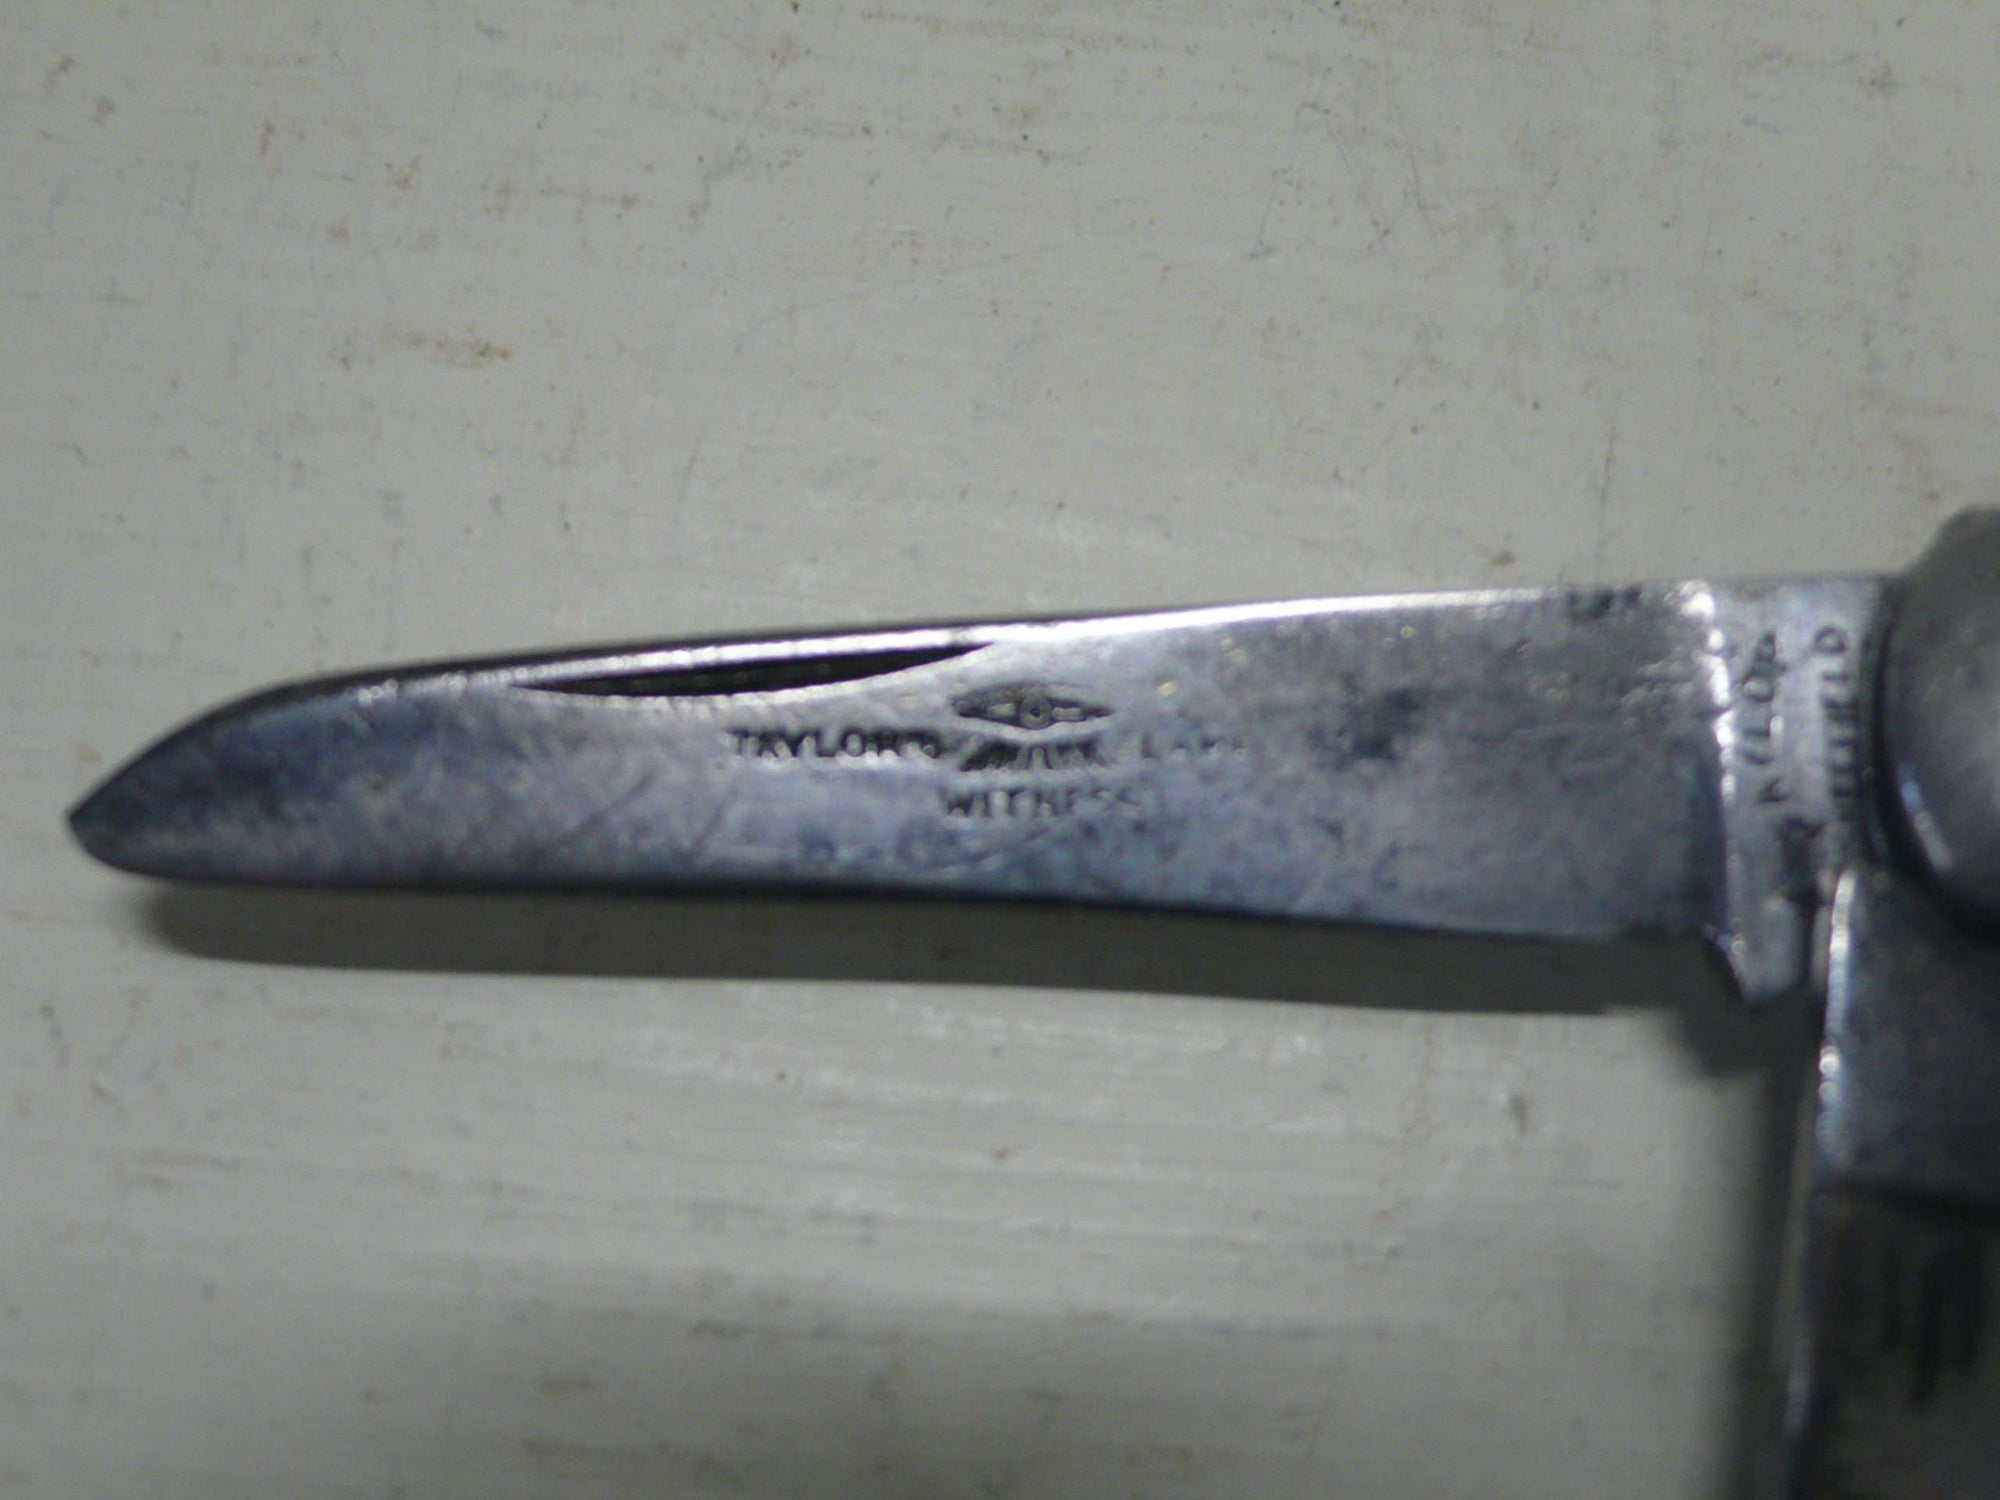 Taylors Vintage Penknife